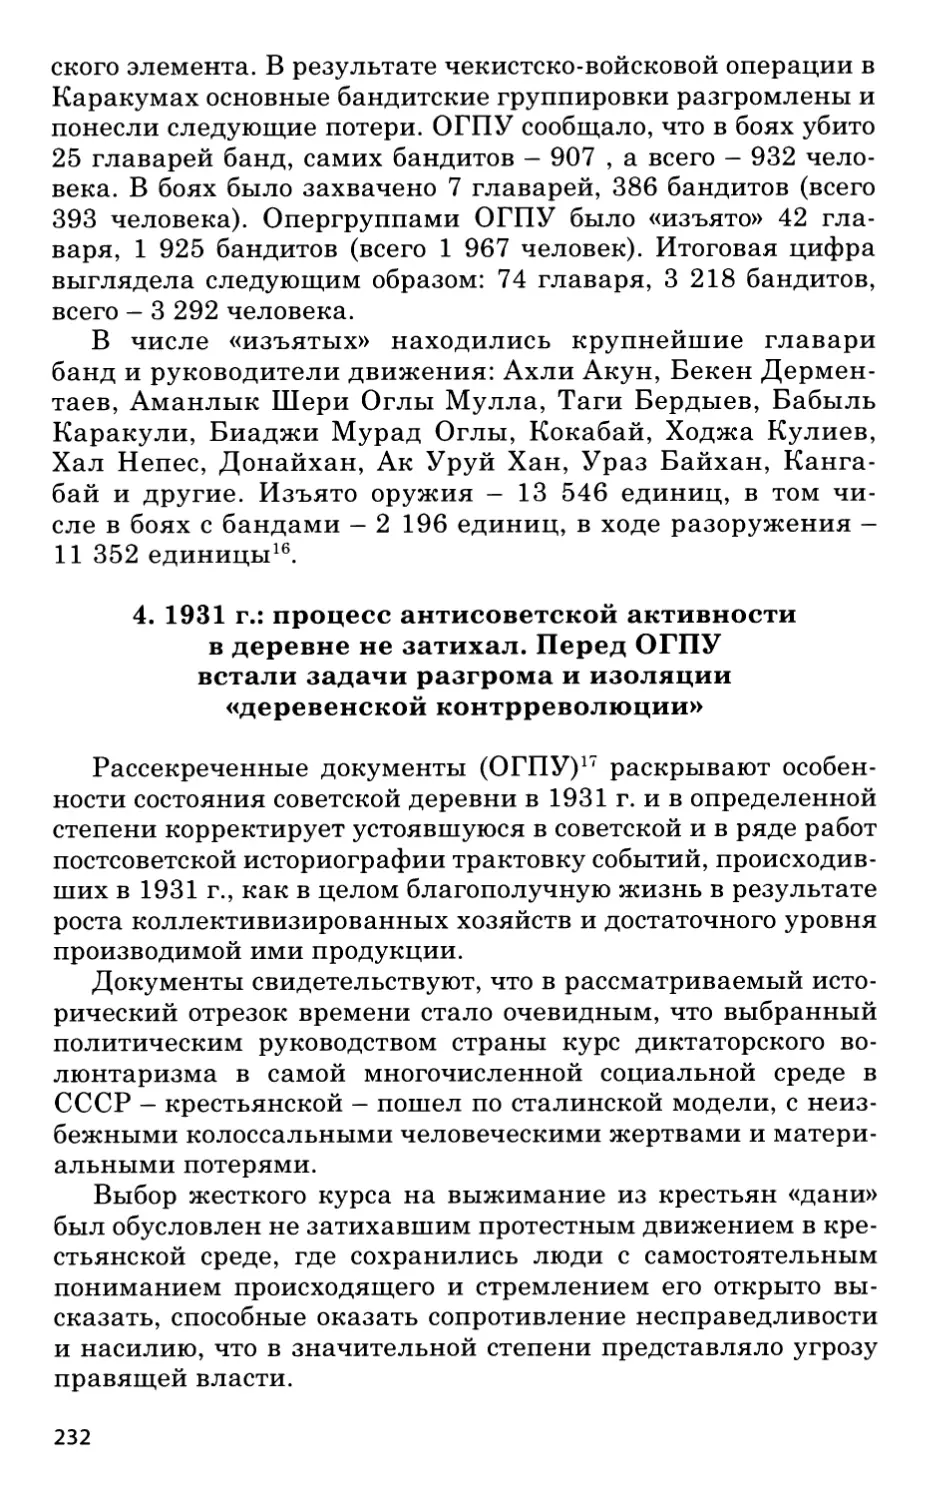 4. 1931 год: процесс антисоветской активности в деревне не затихал. Перед ОГПУ встали задачи разгрома и изоляции «деревенской контрреволюции»